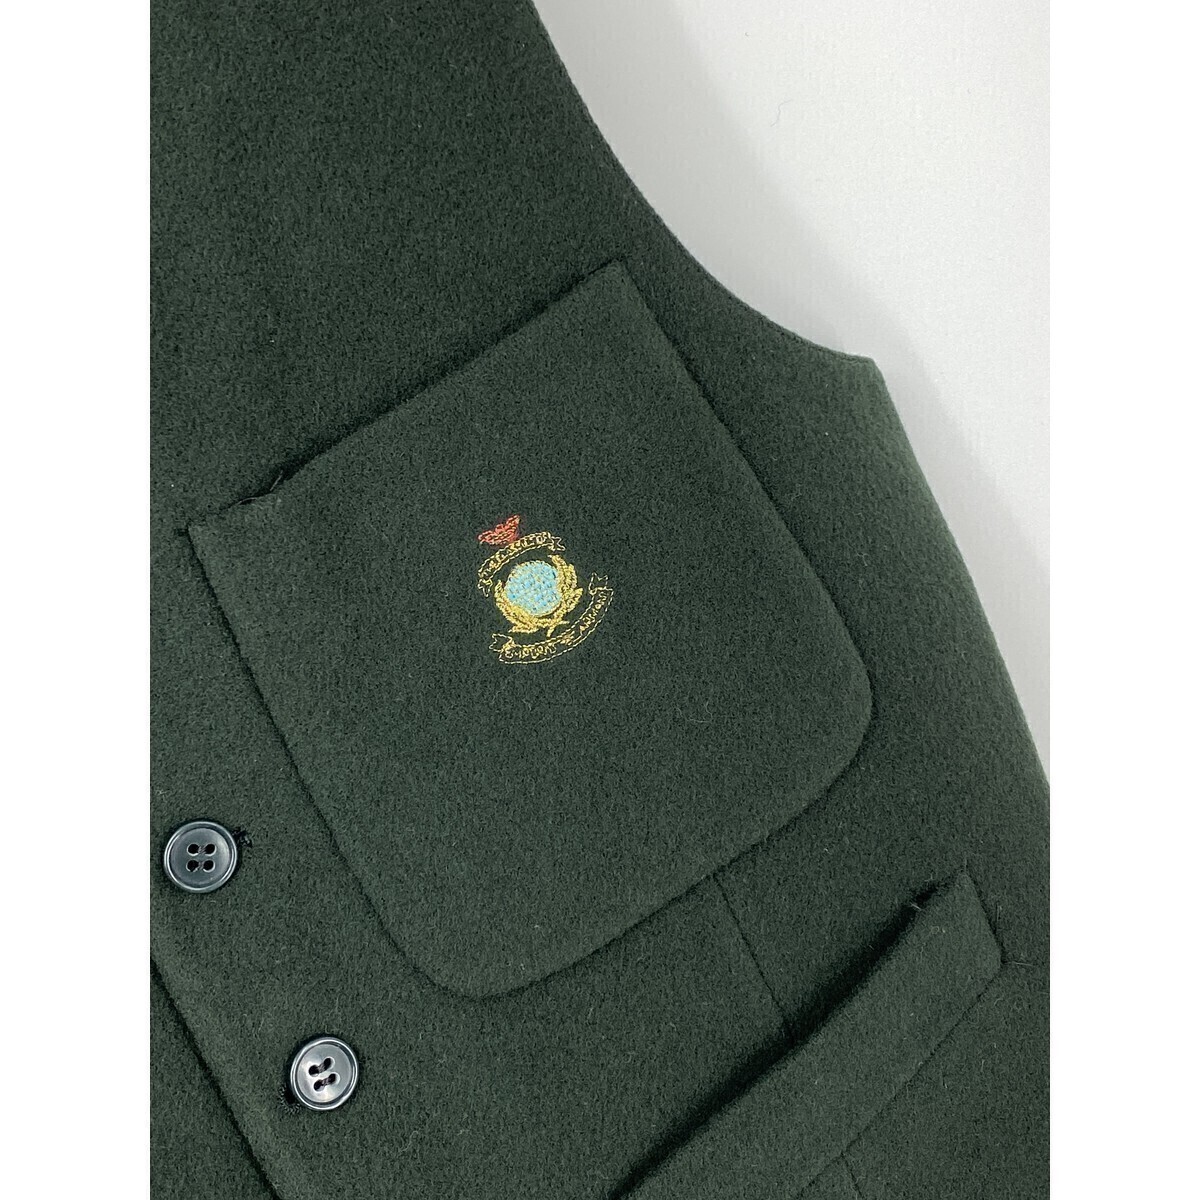 A8309/極美品 春夏 EMPORIO ARMANI エンポリオアルマーニ ウール ロゴ刺繍 ベスト ジレ 46REG S程 緑/イタリア製 メンズ スーツ用 ビジネス_画像3